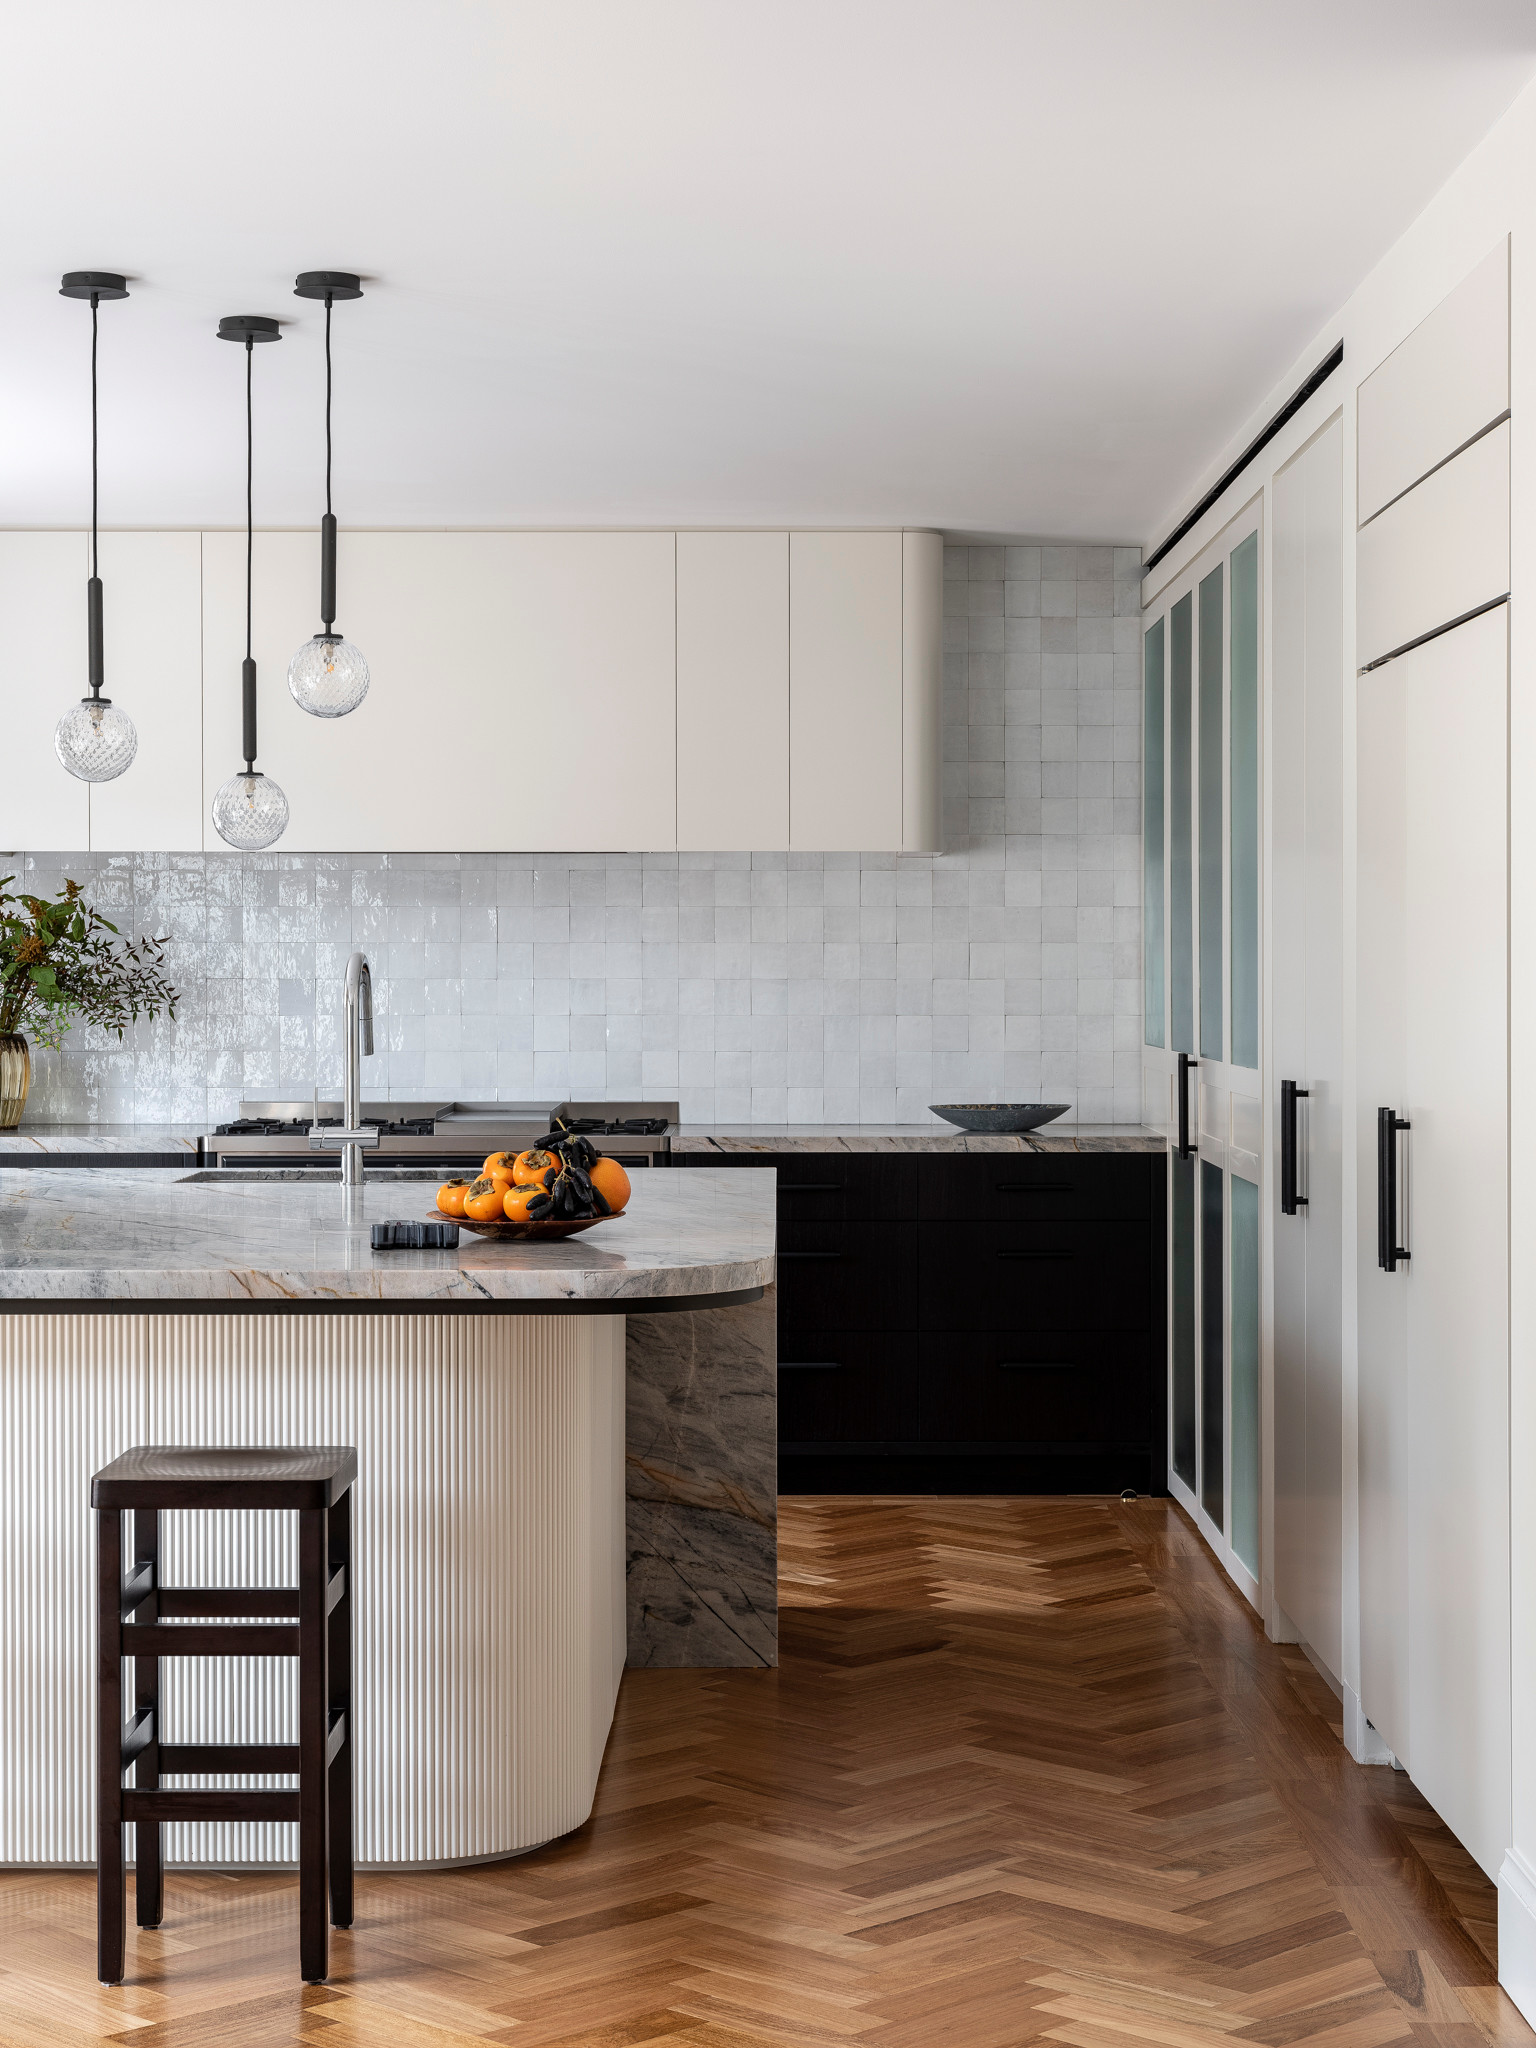 51 Stylish and Elegant Black and White Kitchen Ideas - Matchness.com  White  kitchen decor, Latest kitchen designs, Kitchen cabinet design